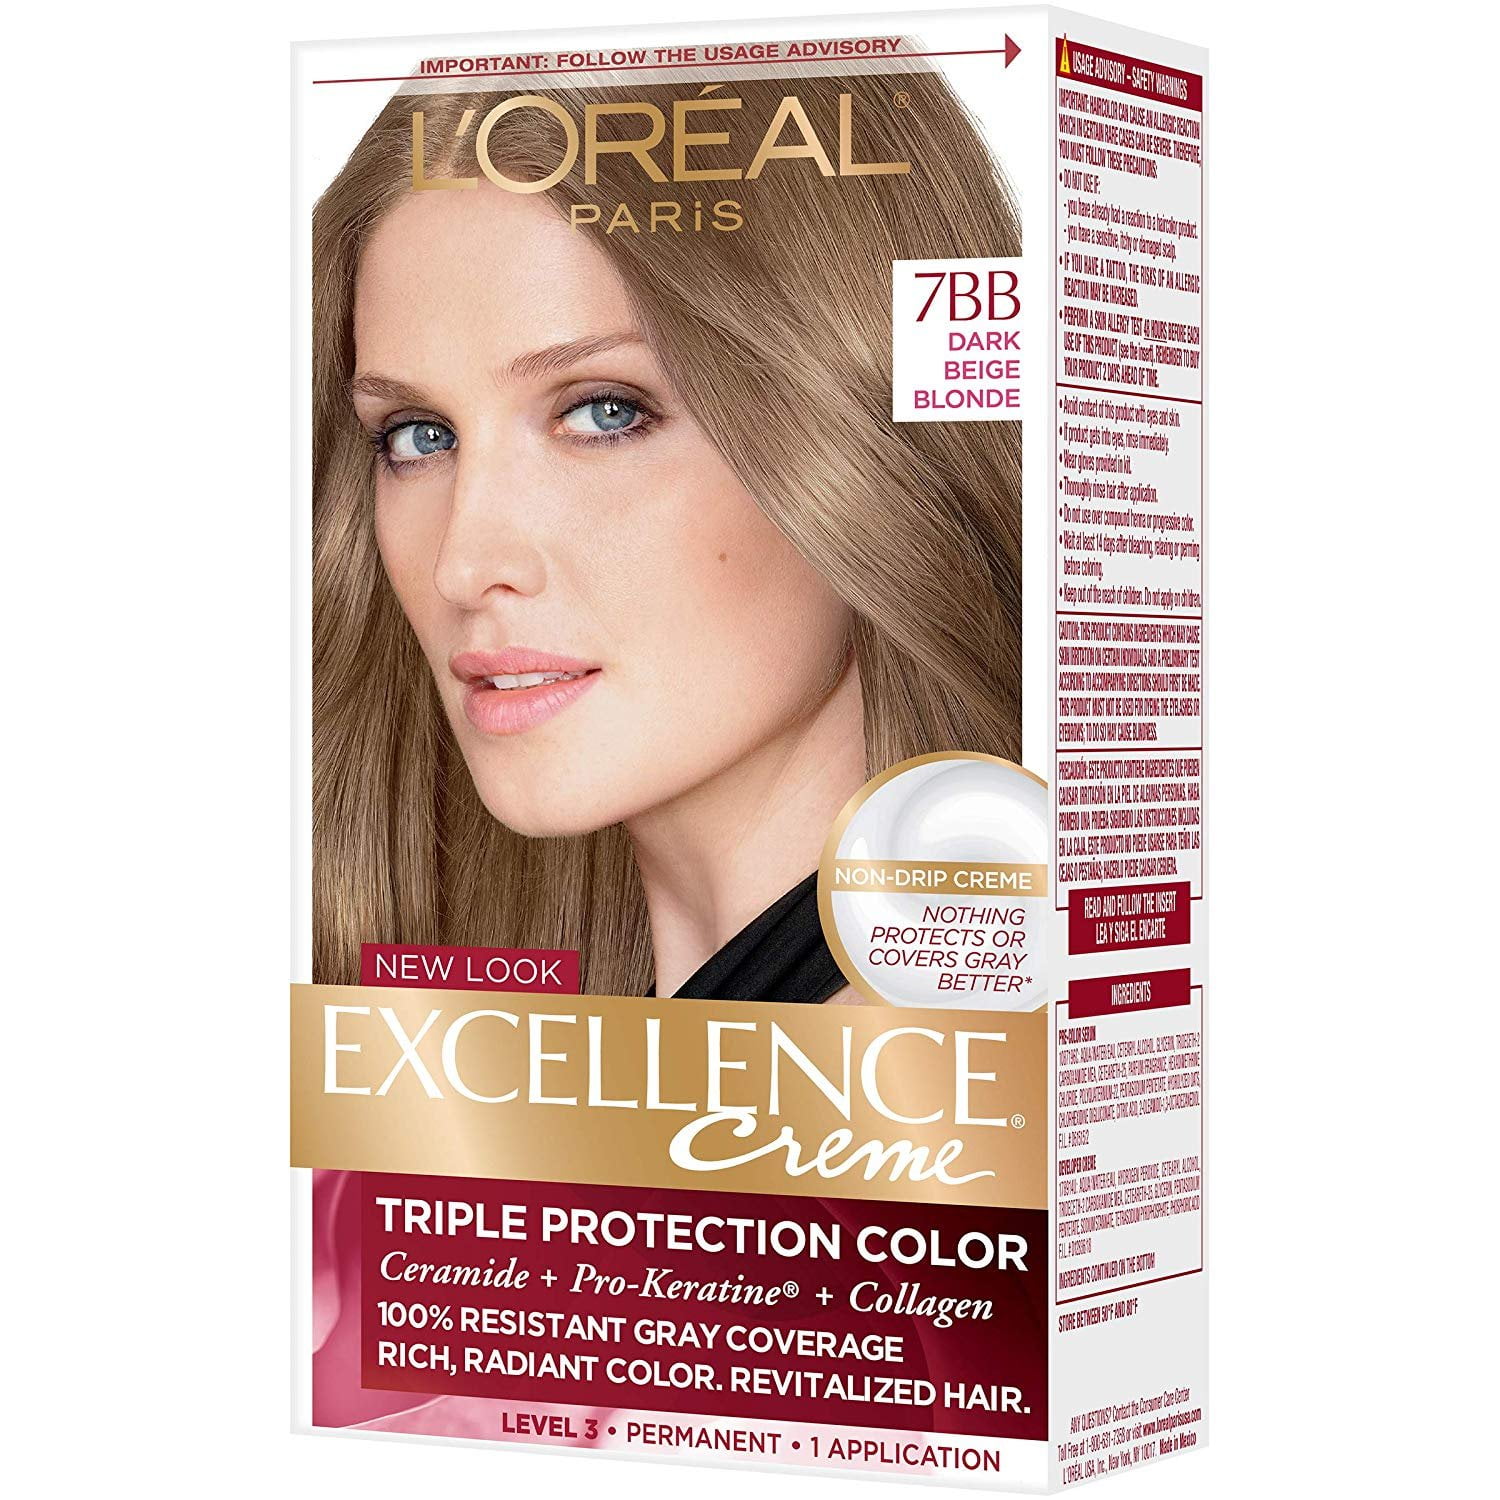 L'Oreal Paris Excellence Creme Permanent Hair Color, 7BB Dark Beige Blonde  